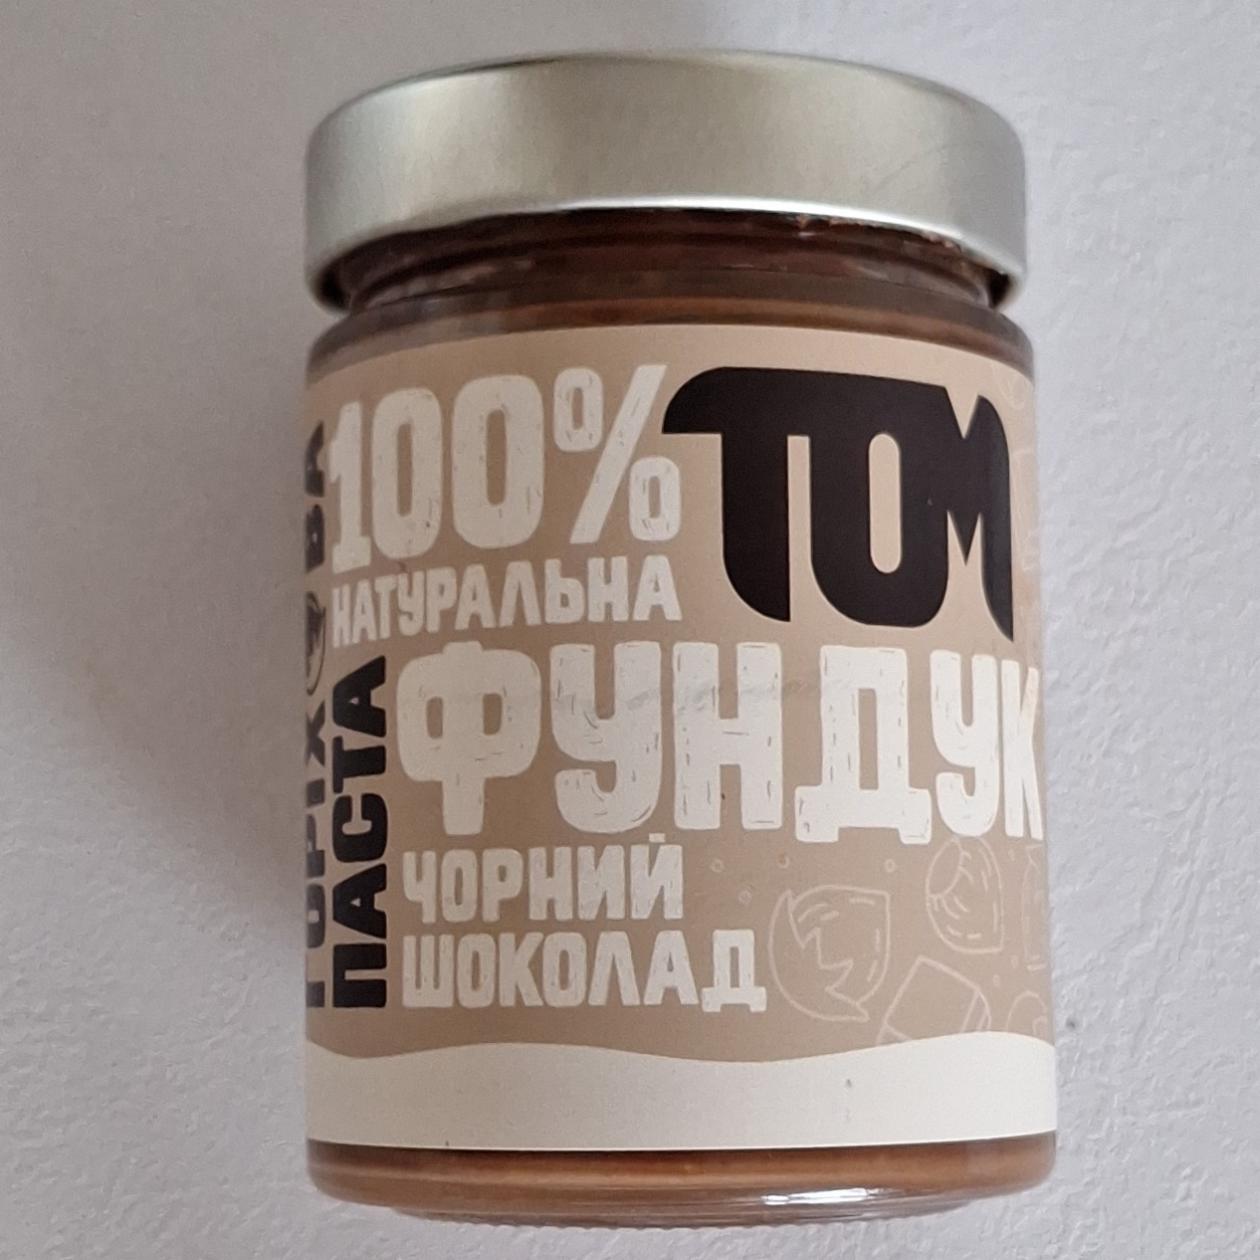 Фото - Паста ореховая Фундук, Черный шоколад ТОМ